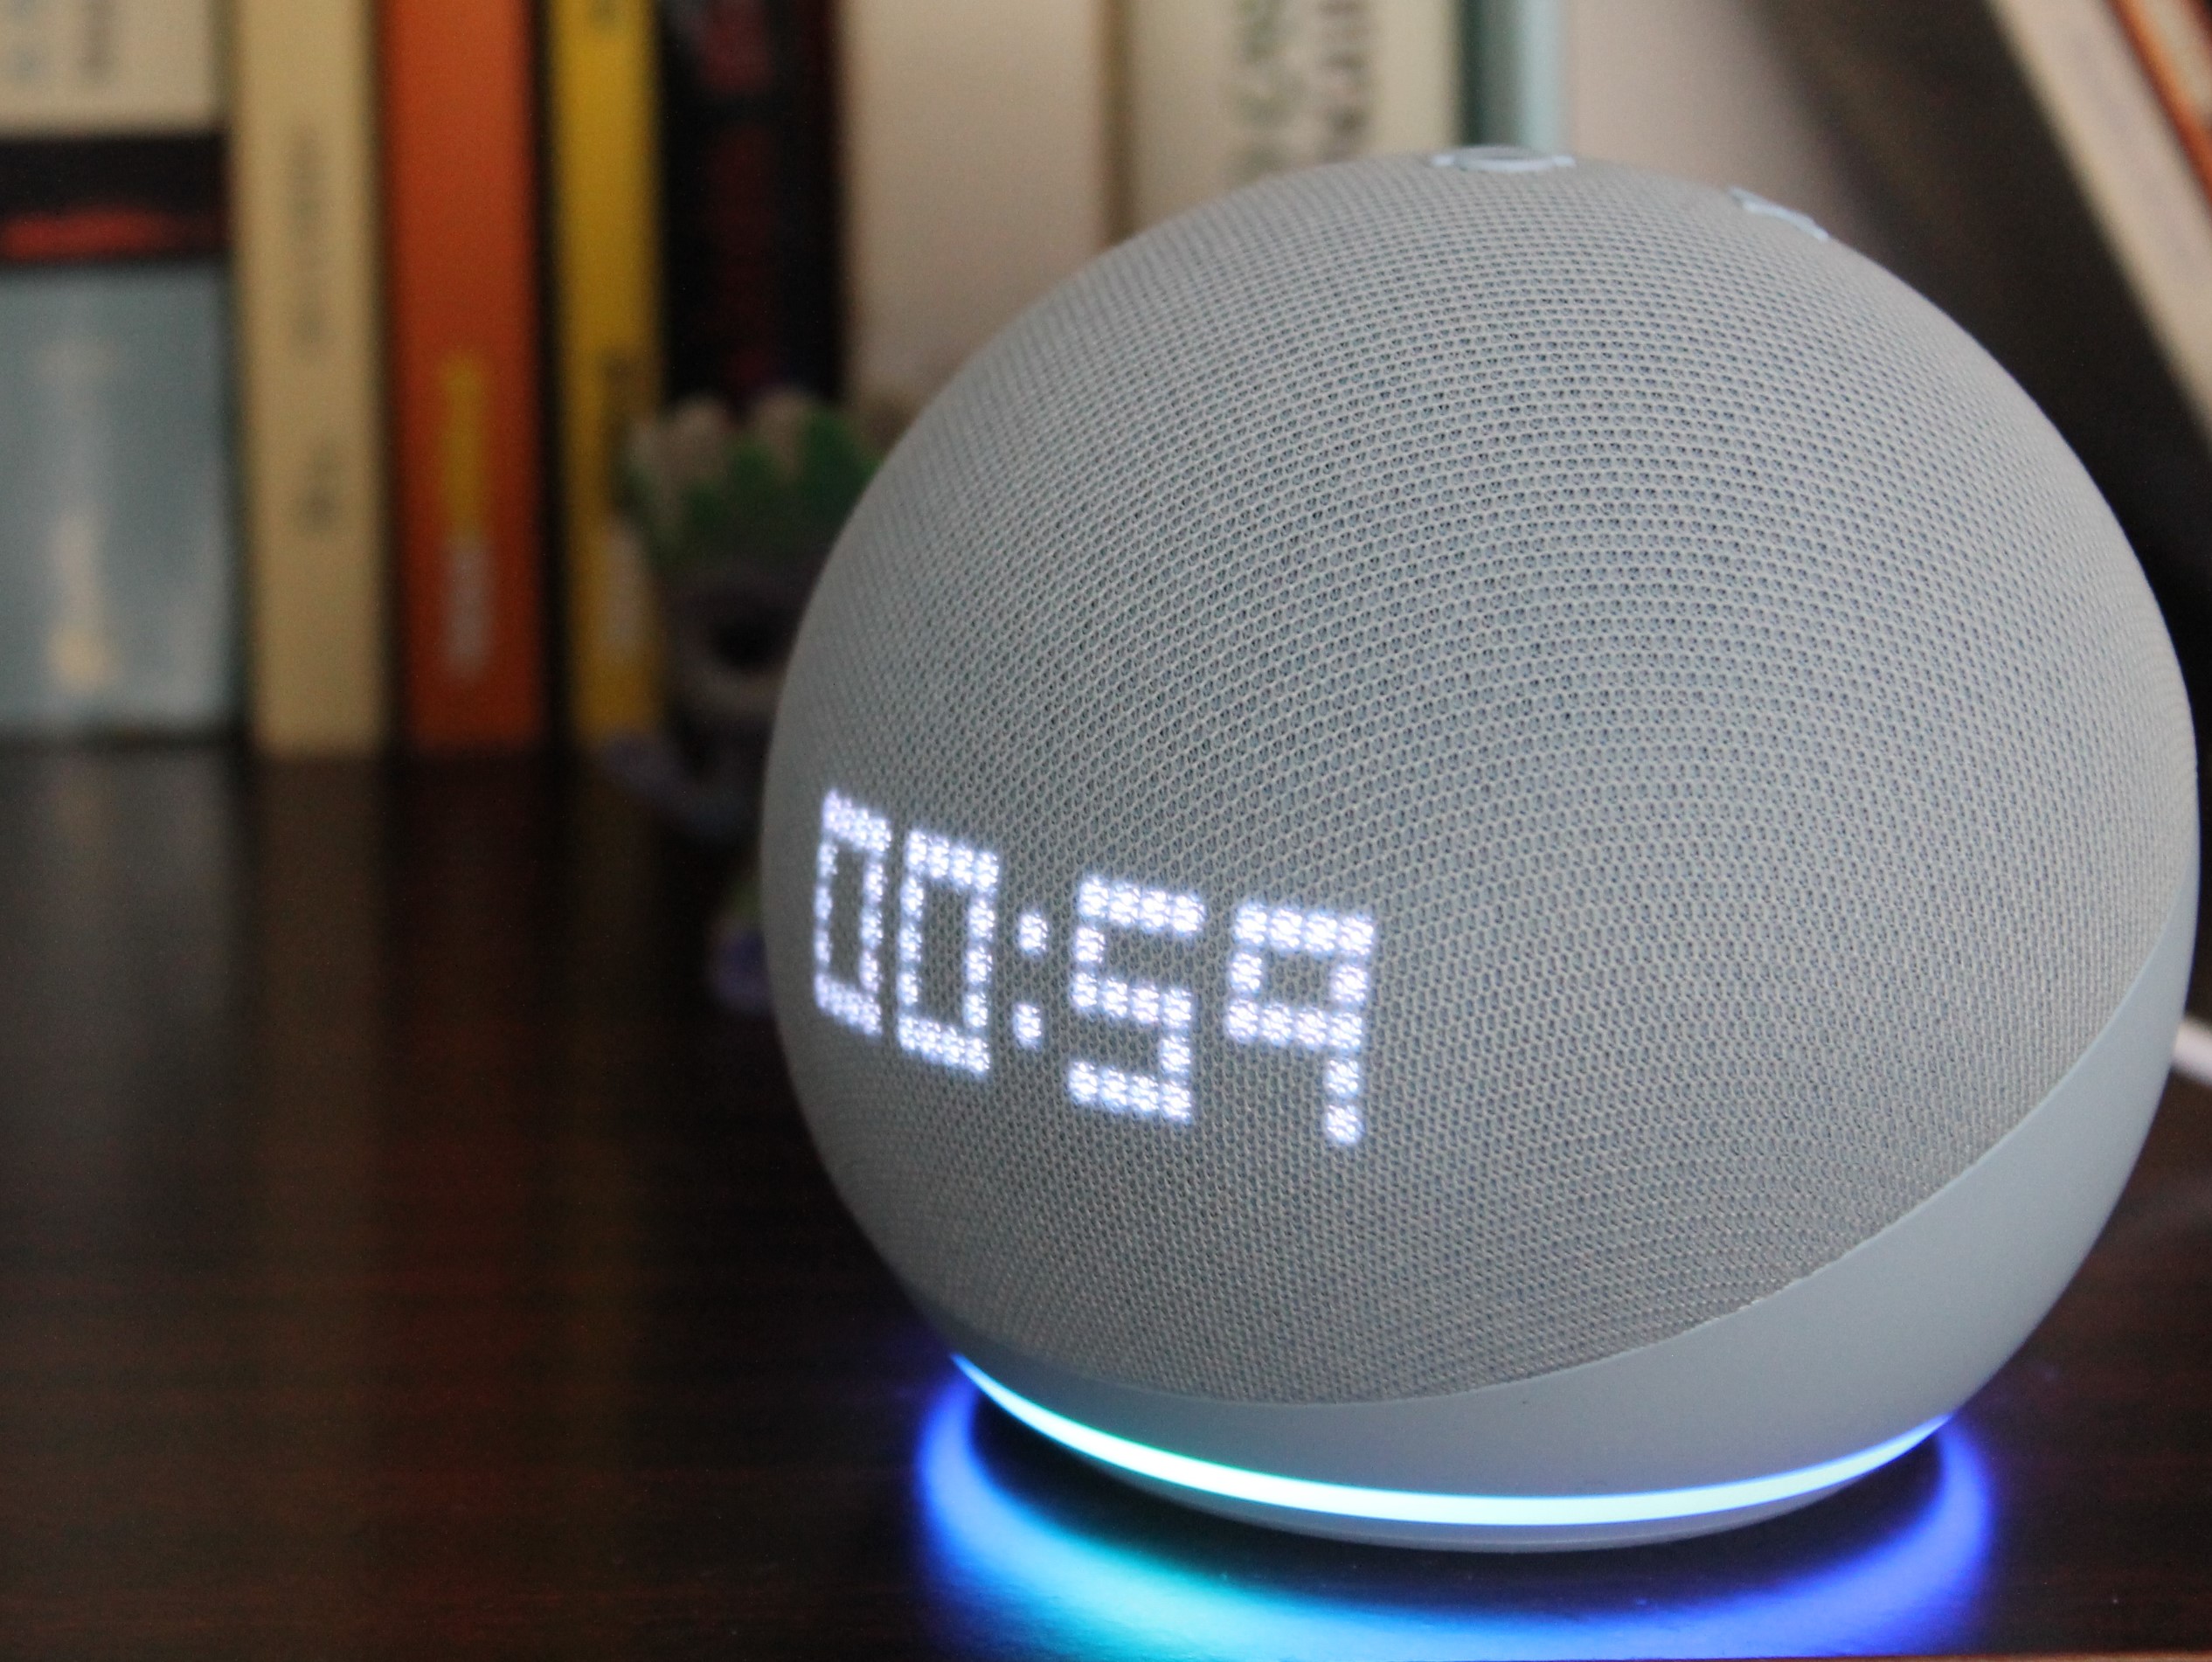 Nuevos Echo Dot 5 de , con sensor de temperatura y mejor audio